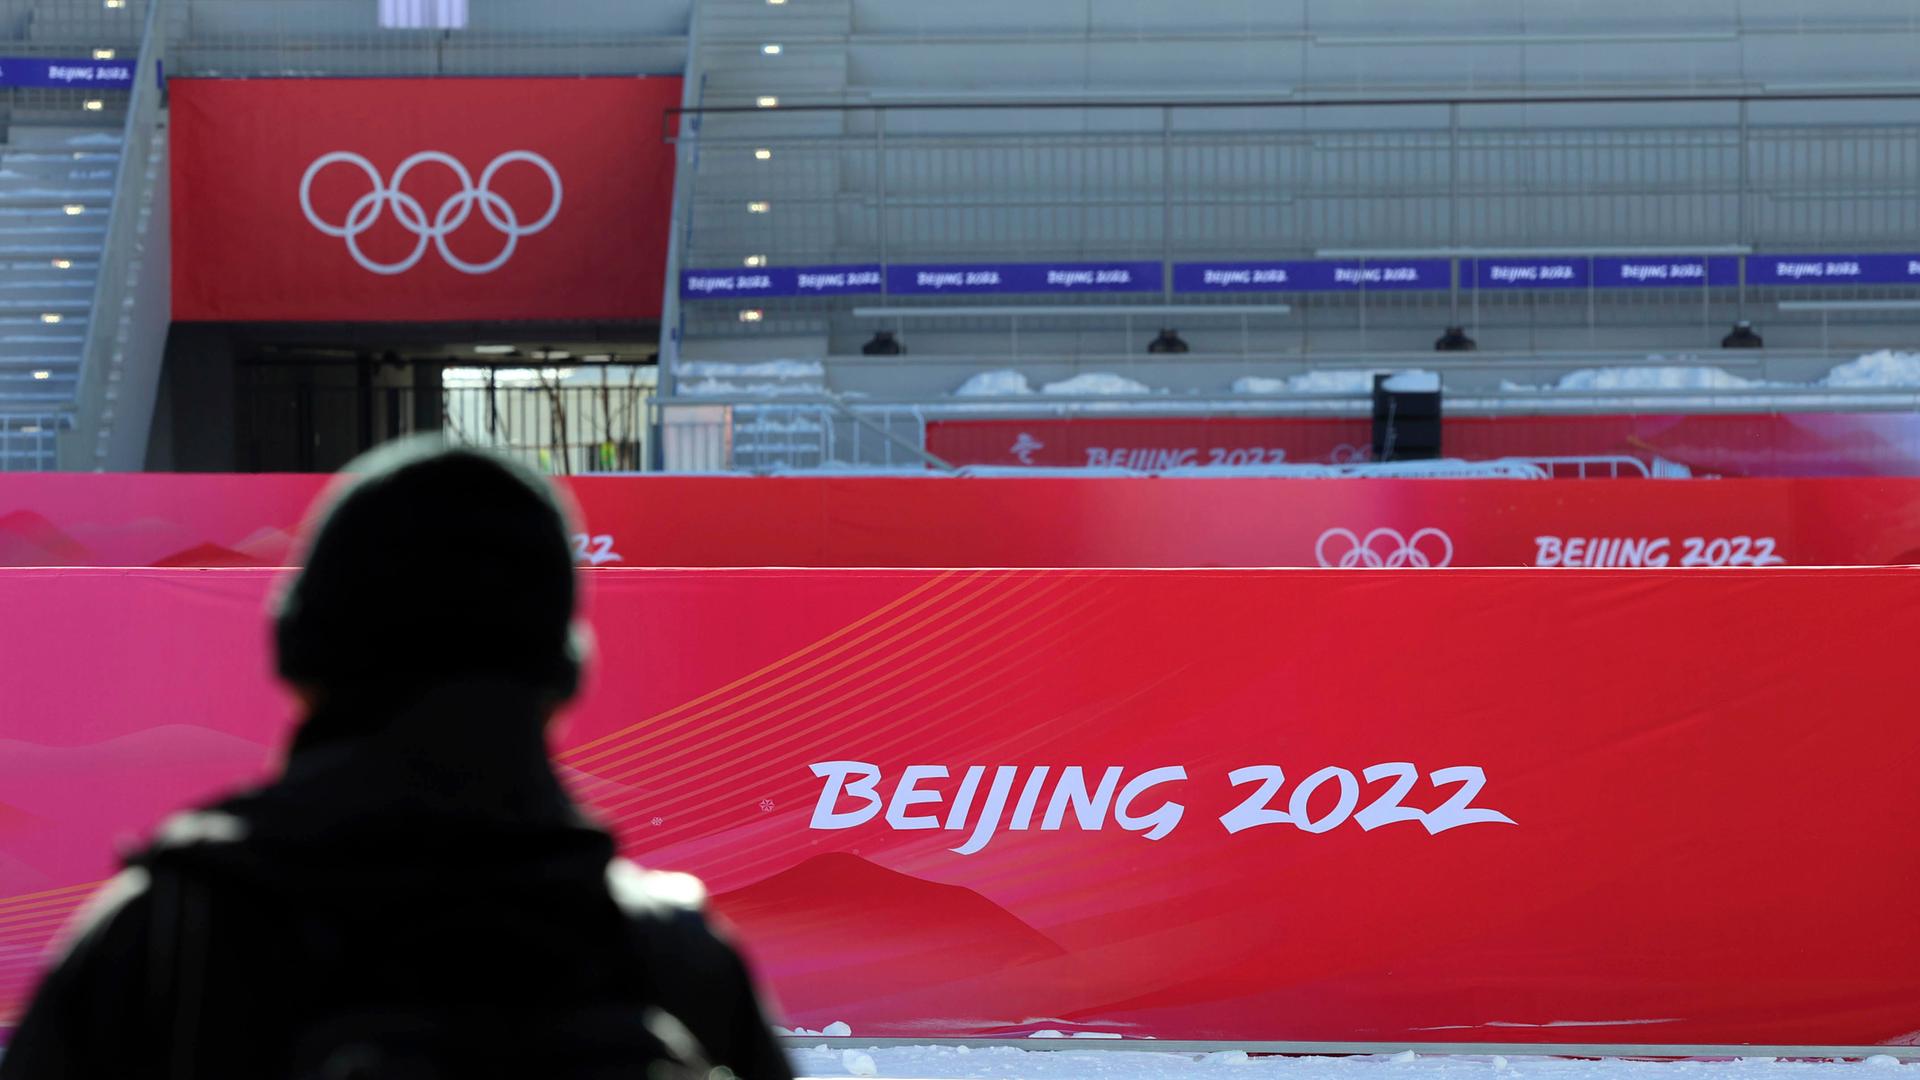 Vor Olympischen Spielen - Amnesty International: "Menschenrechtslage in China weiterhin katastrophal"